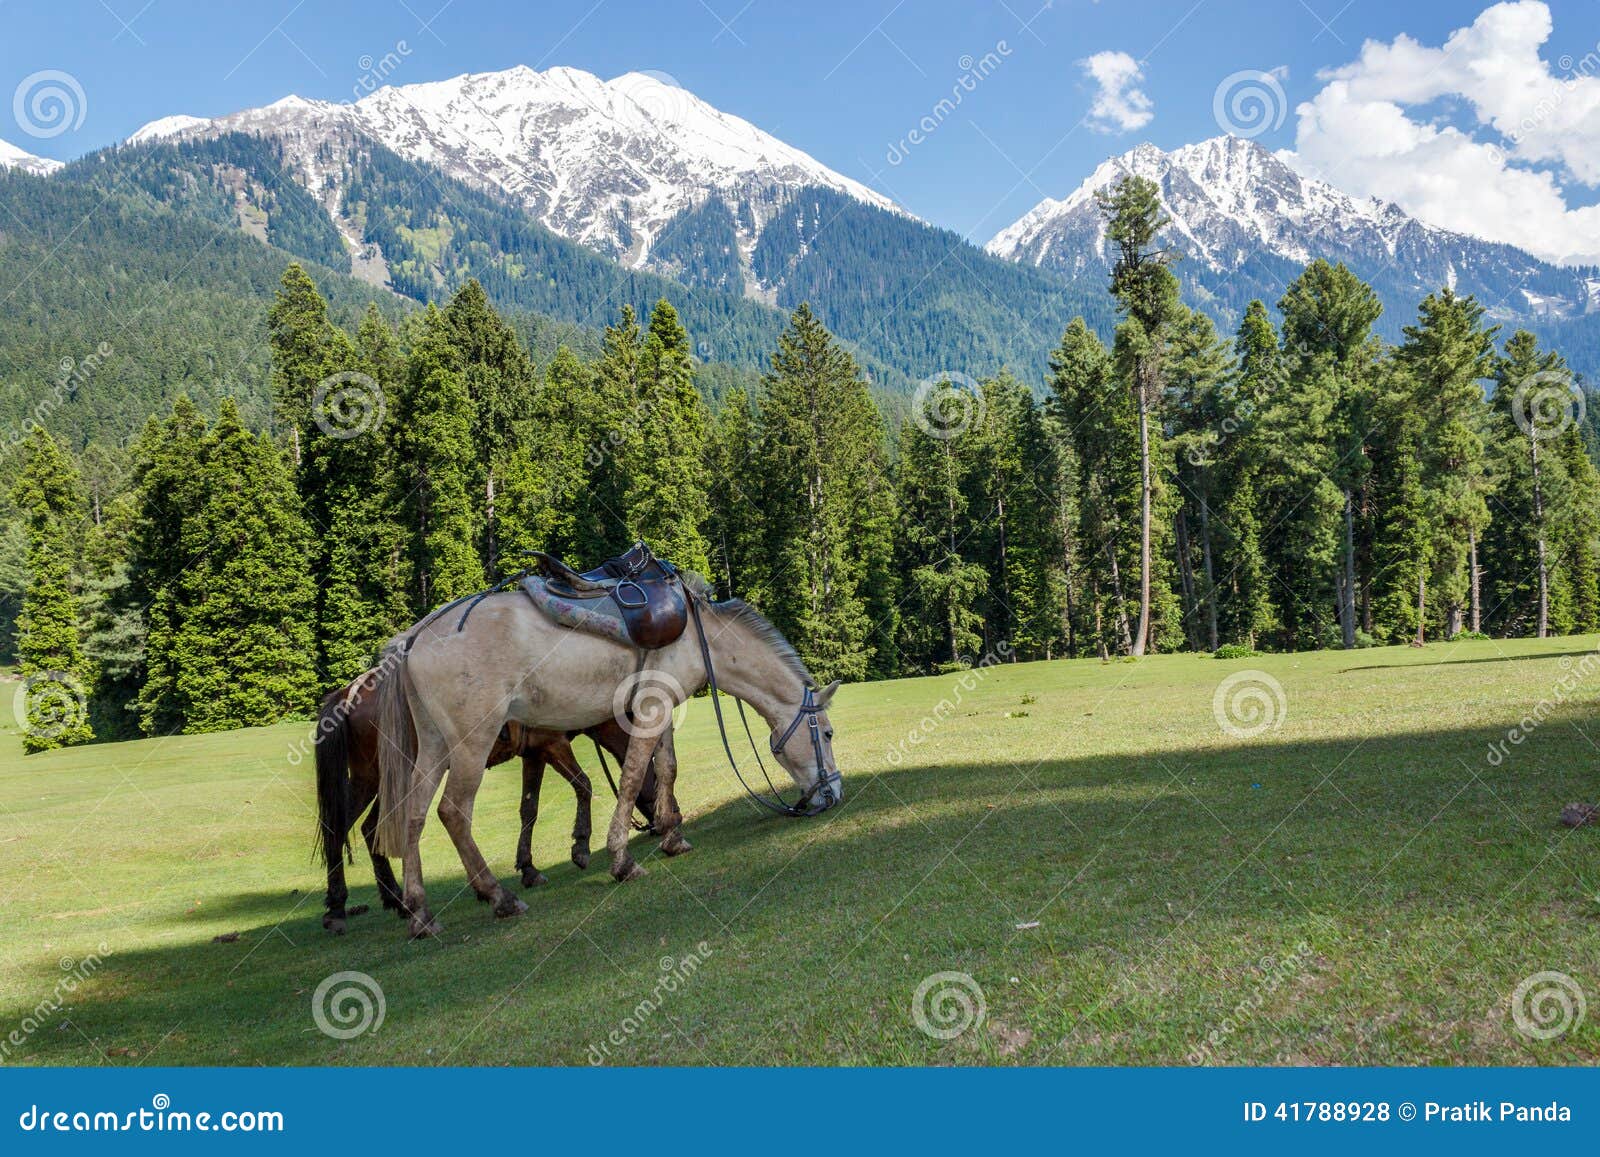 horses grazing, jammu and kashmir, mini switzerland